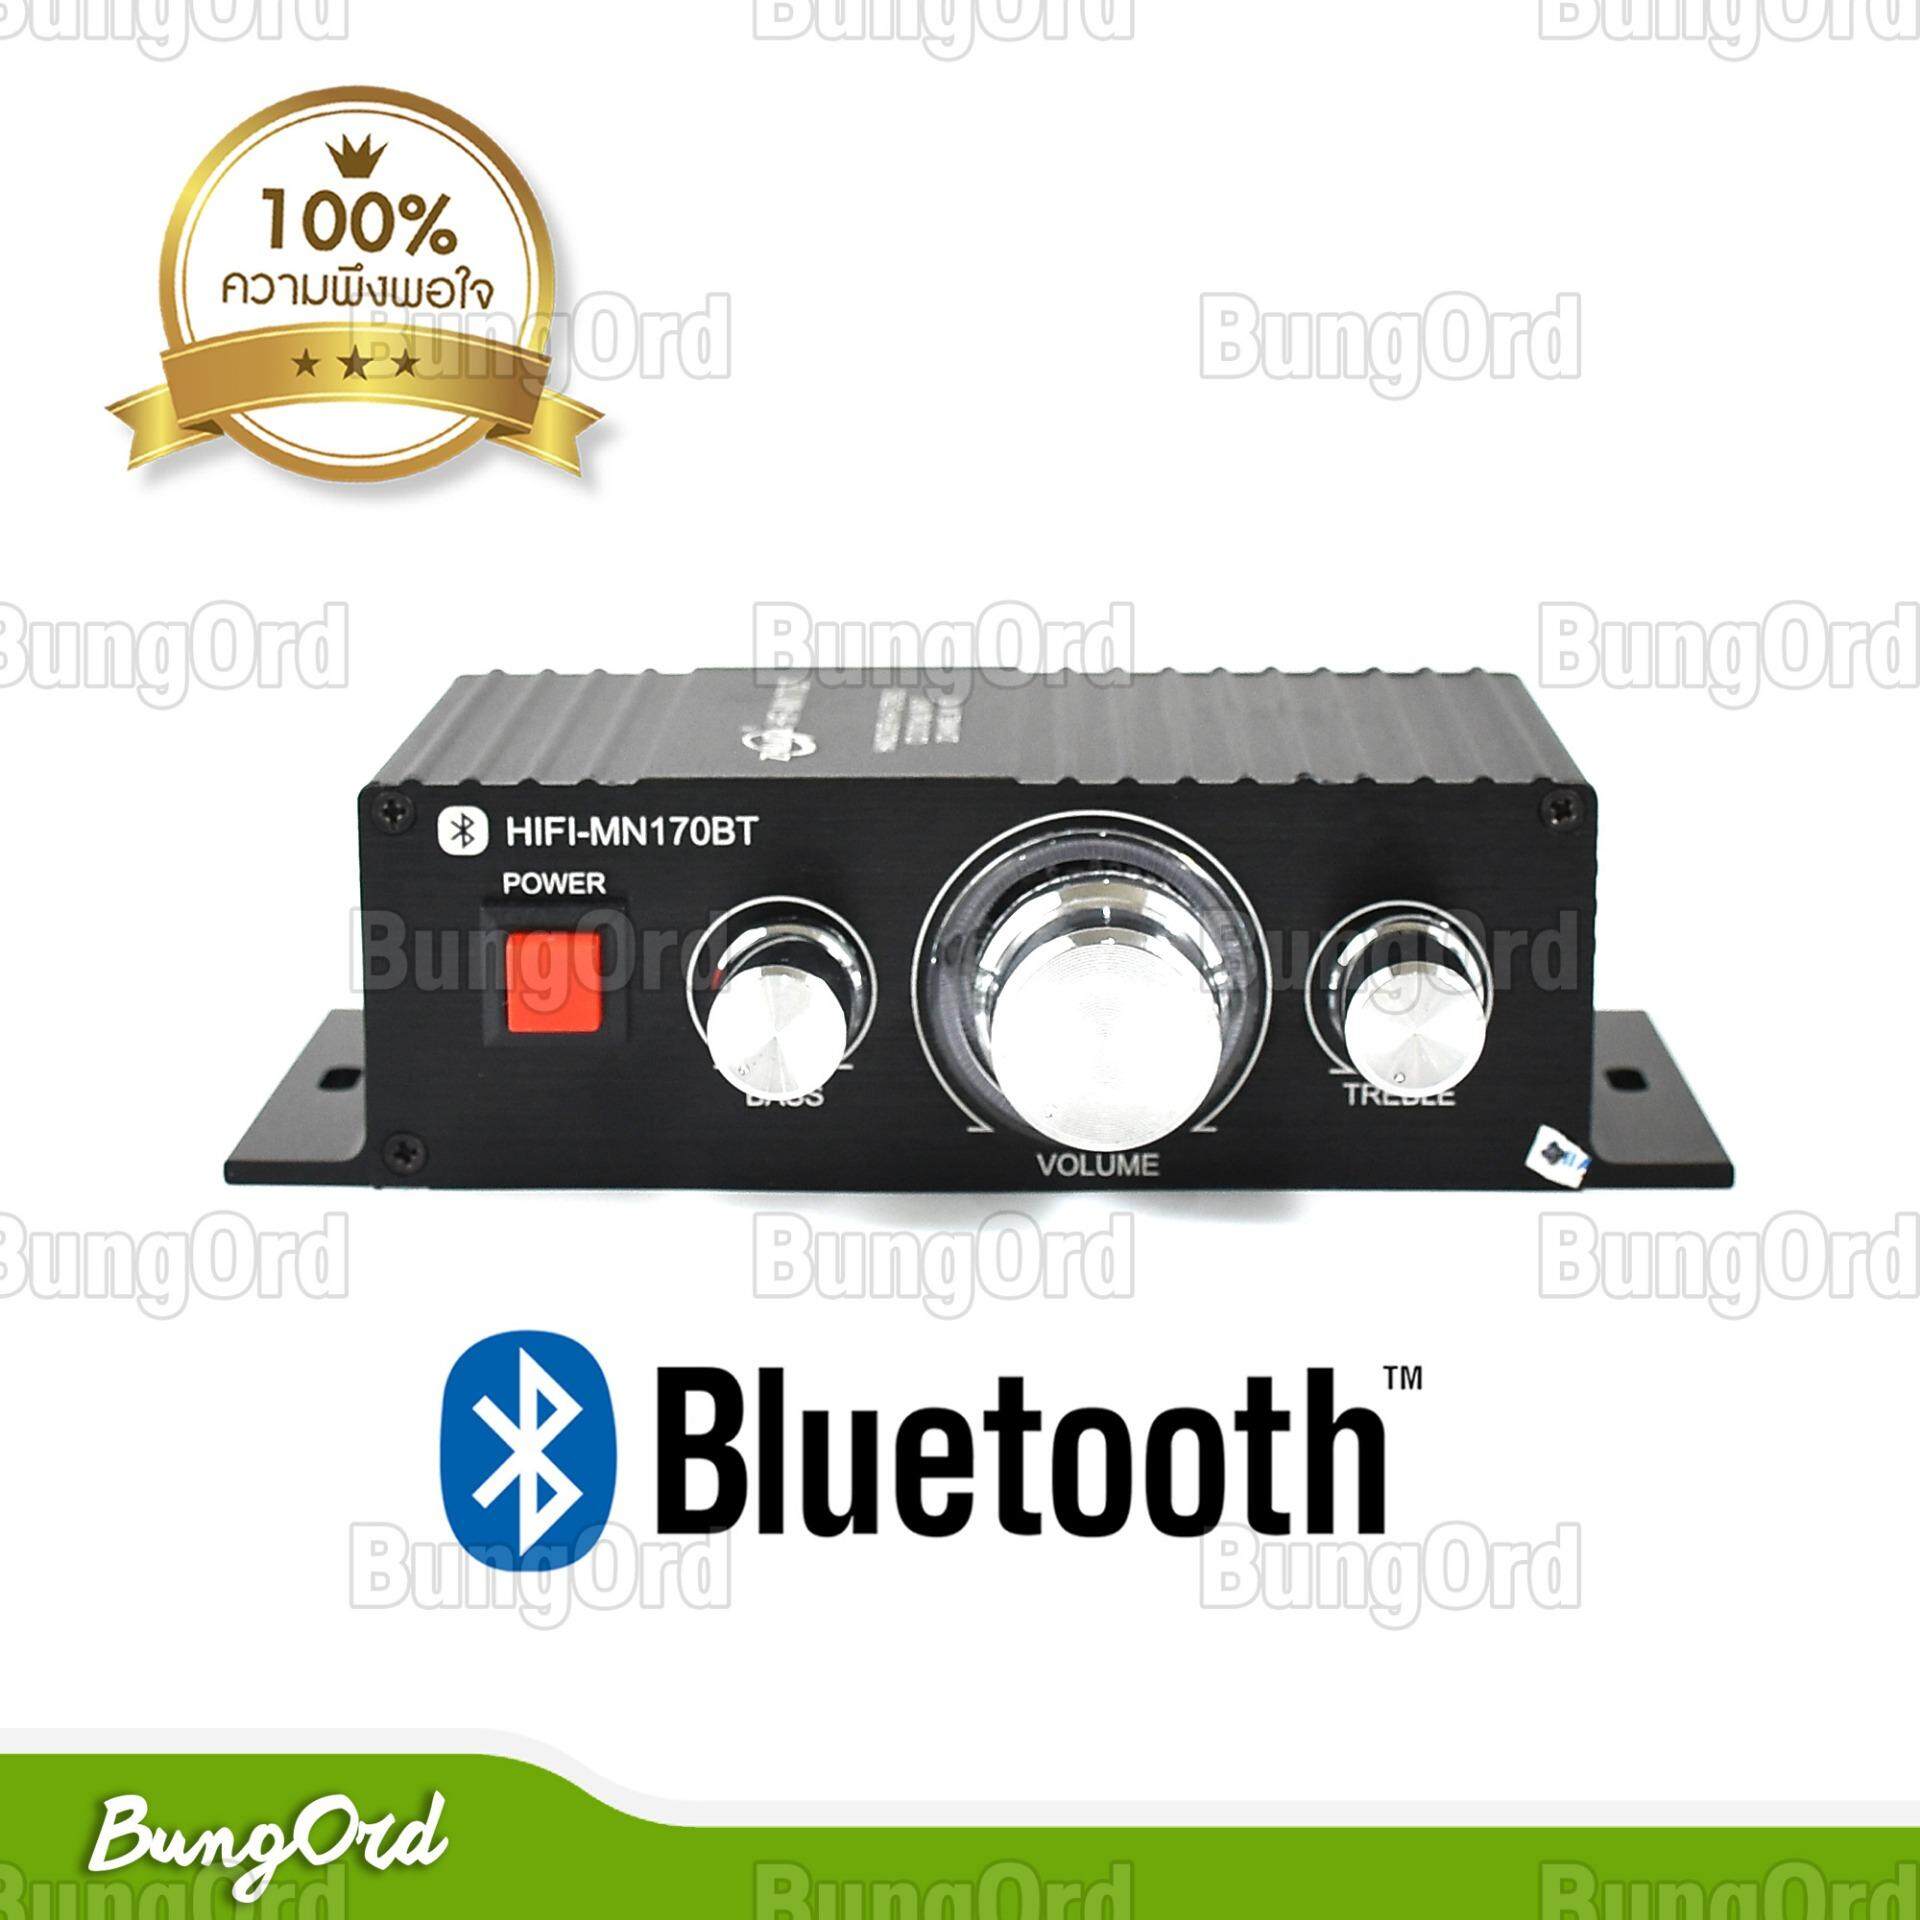 เครื่องขยายเสียง 600วัตต์ PMOP บลูทูธ ดิจิตอล แอมป์ รถยนต์ มอเตอไซค์ เล่นเพลงผ่าน Bluetooth มือถือได้ พร้อมสายต่อใช้งานในรถ Bluetooth Digital Audio Amplifier HIFI-STEREO AUDIO POWER AMPLIFIER